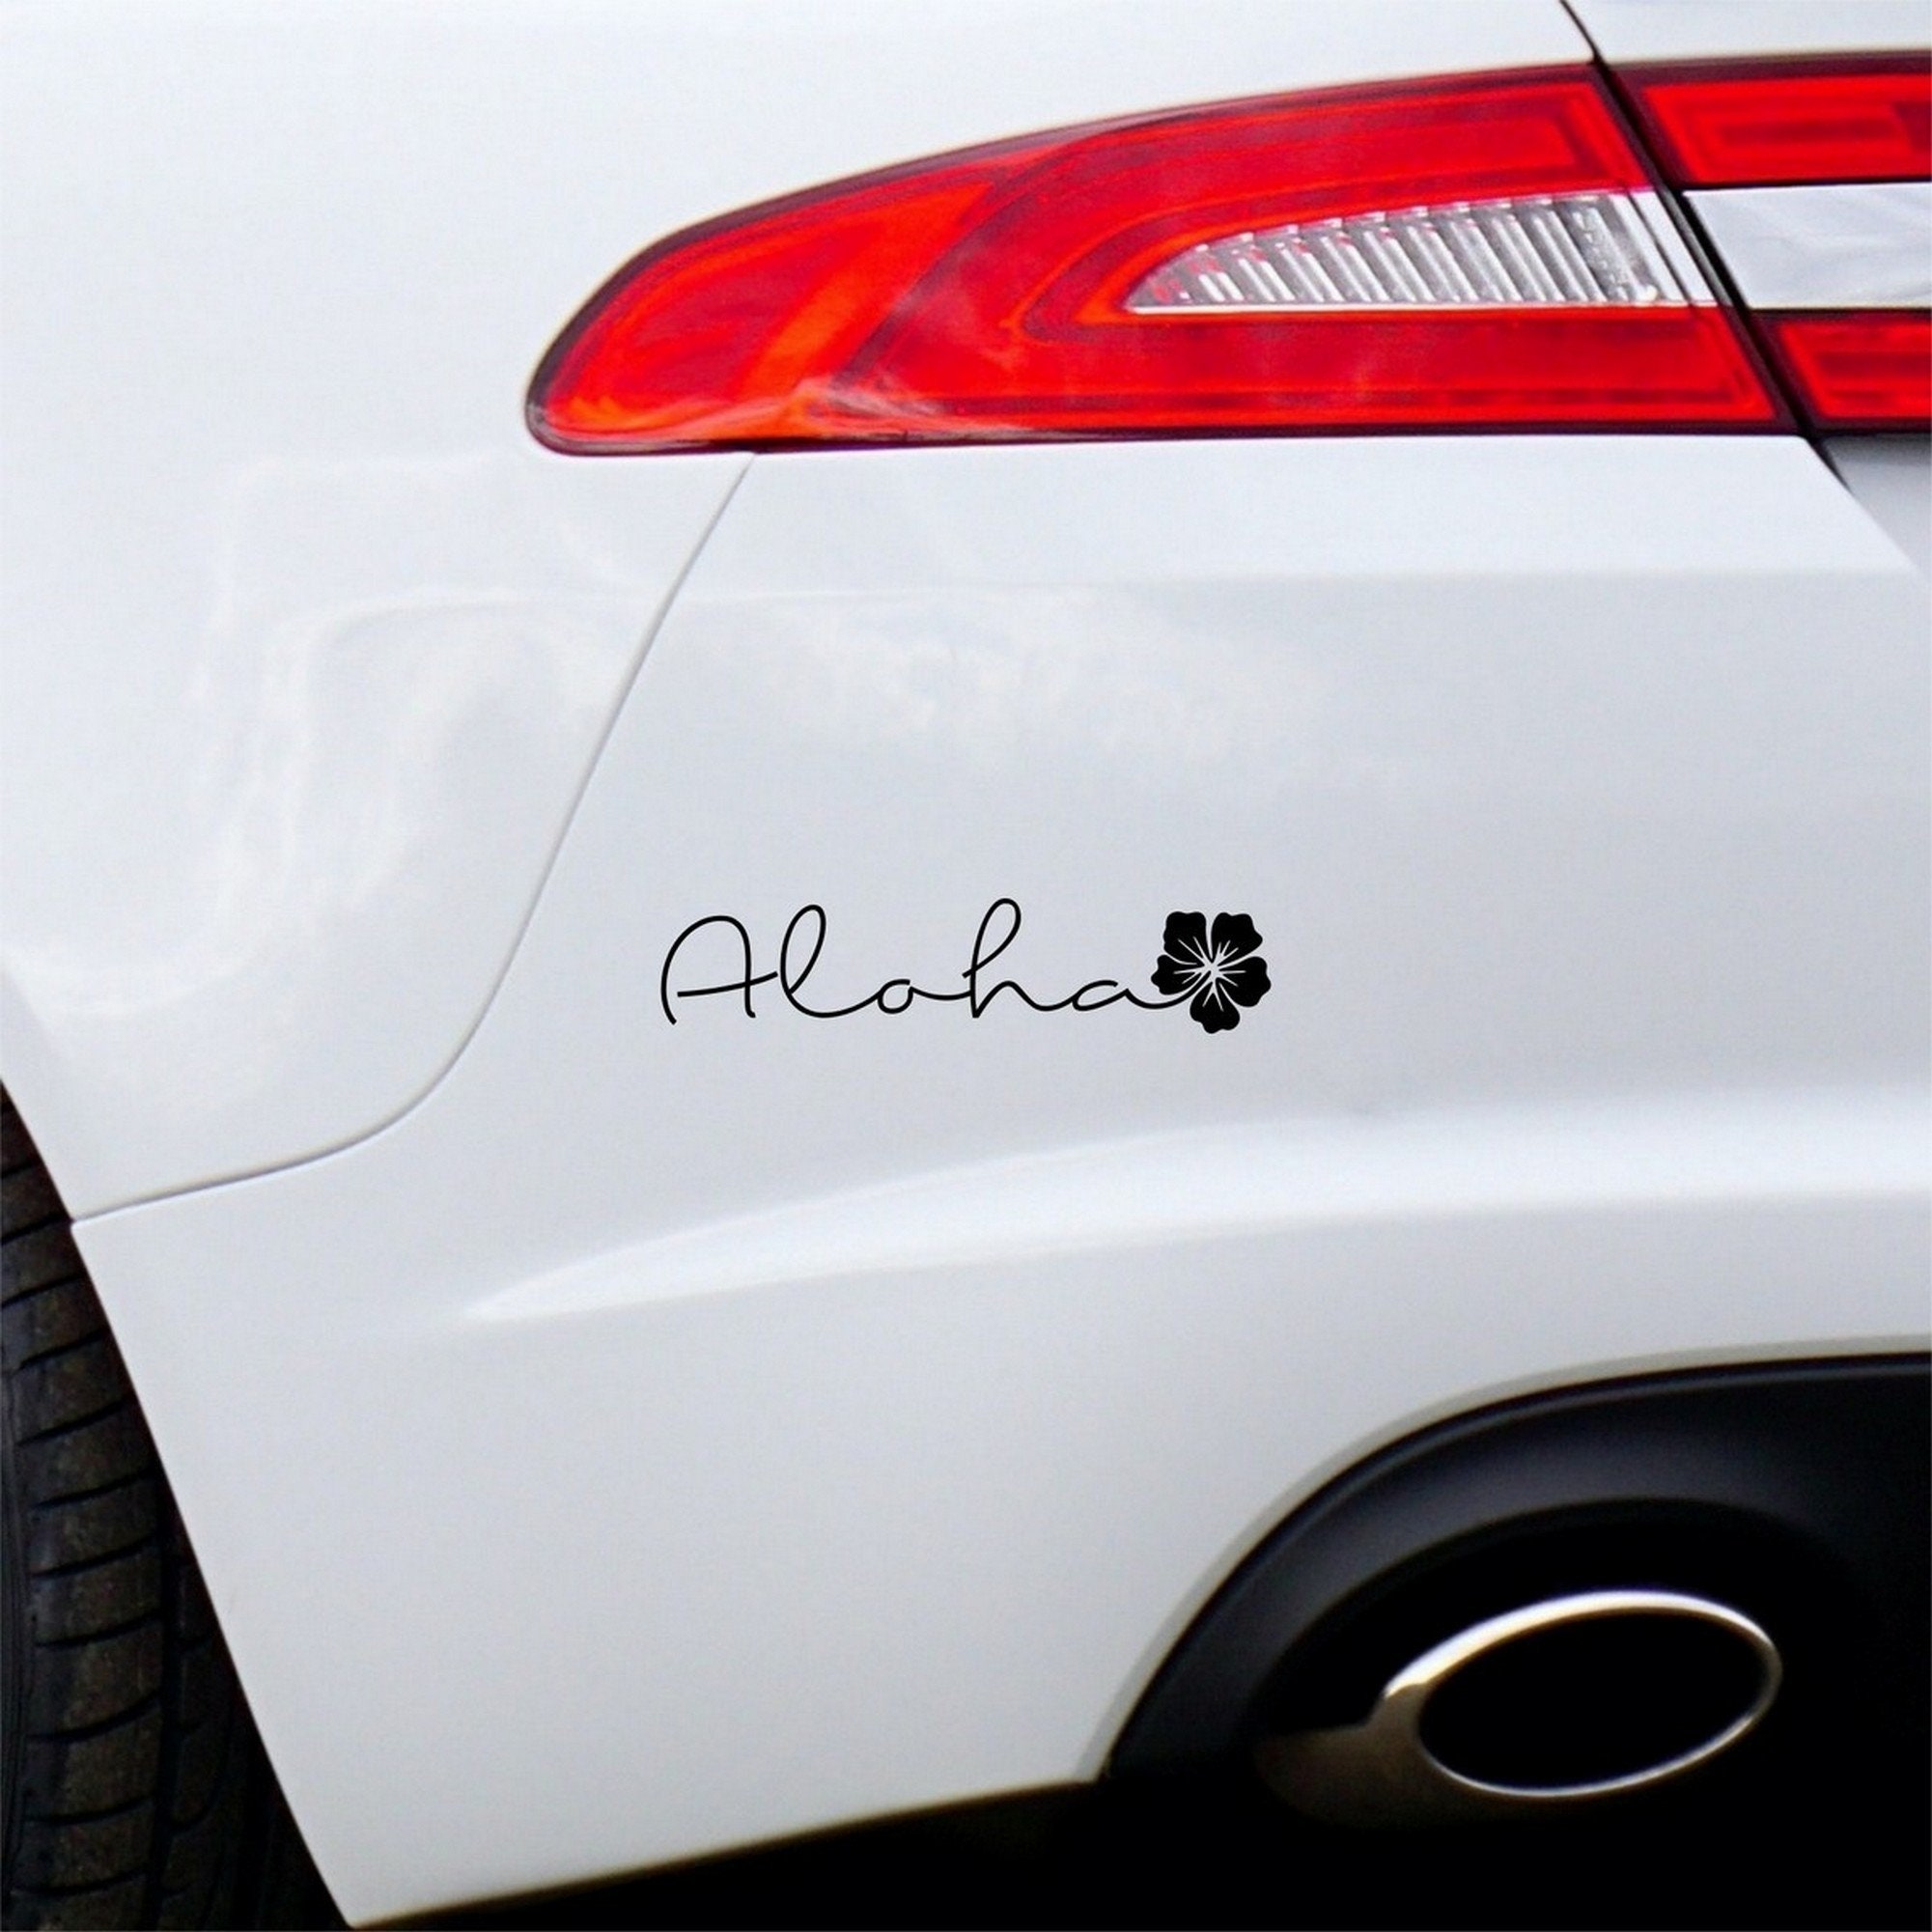 Stickers fleur Hibiscus pour la deco sur véhicule - LovStickers Orientation  - Sens Normal Couleur Exterieur Noir